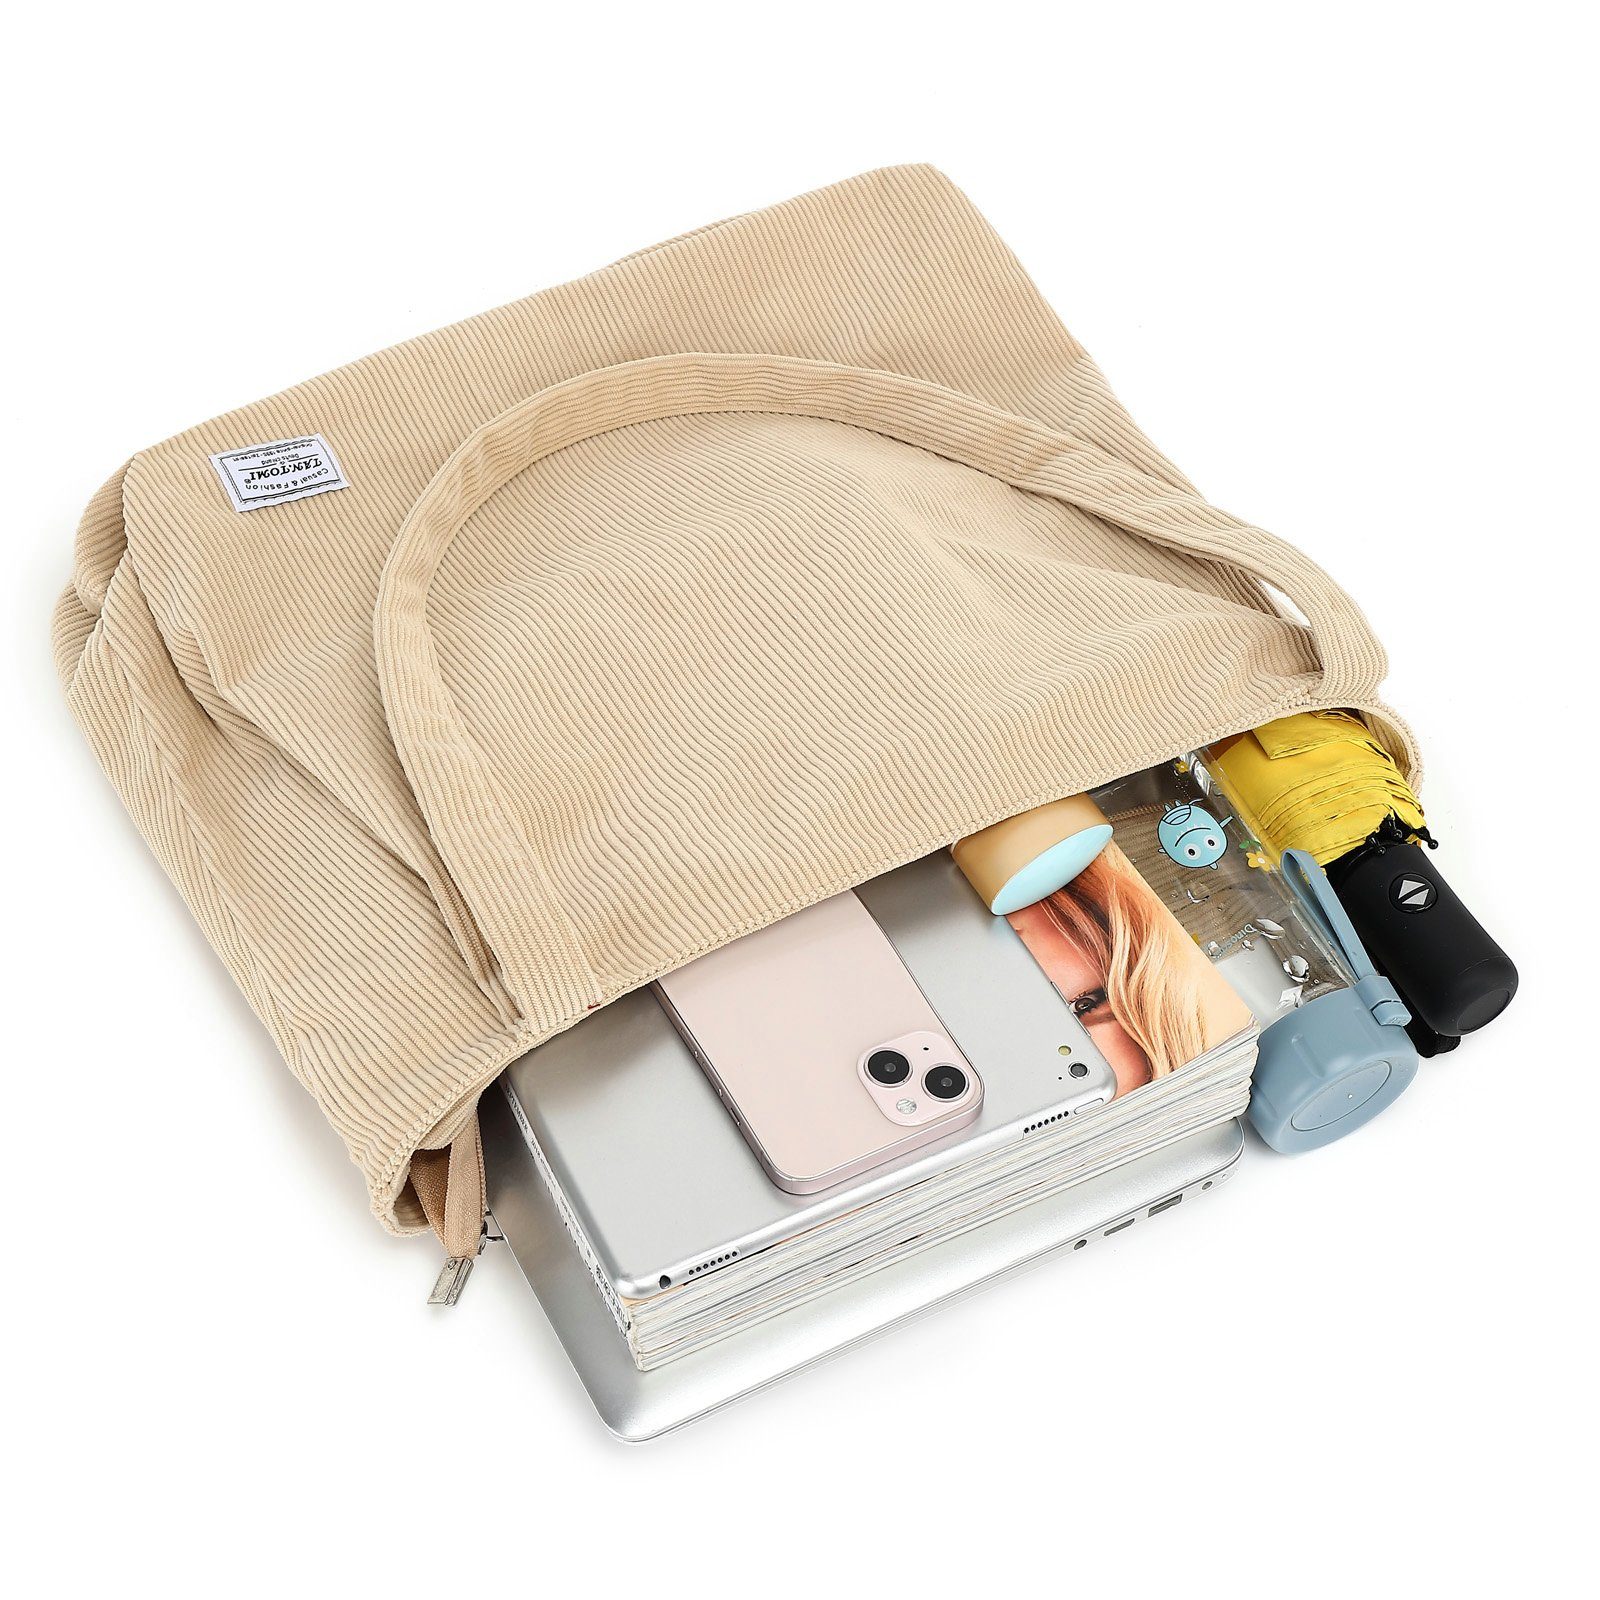 Damen Einkaufstaschen TAN.TOMI Einkaufsbeutel Tasche Damen Umhängetasche mit Reißverschluss,Groß Shopper Tasche Tote Bag Handtas